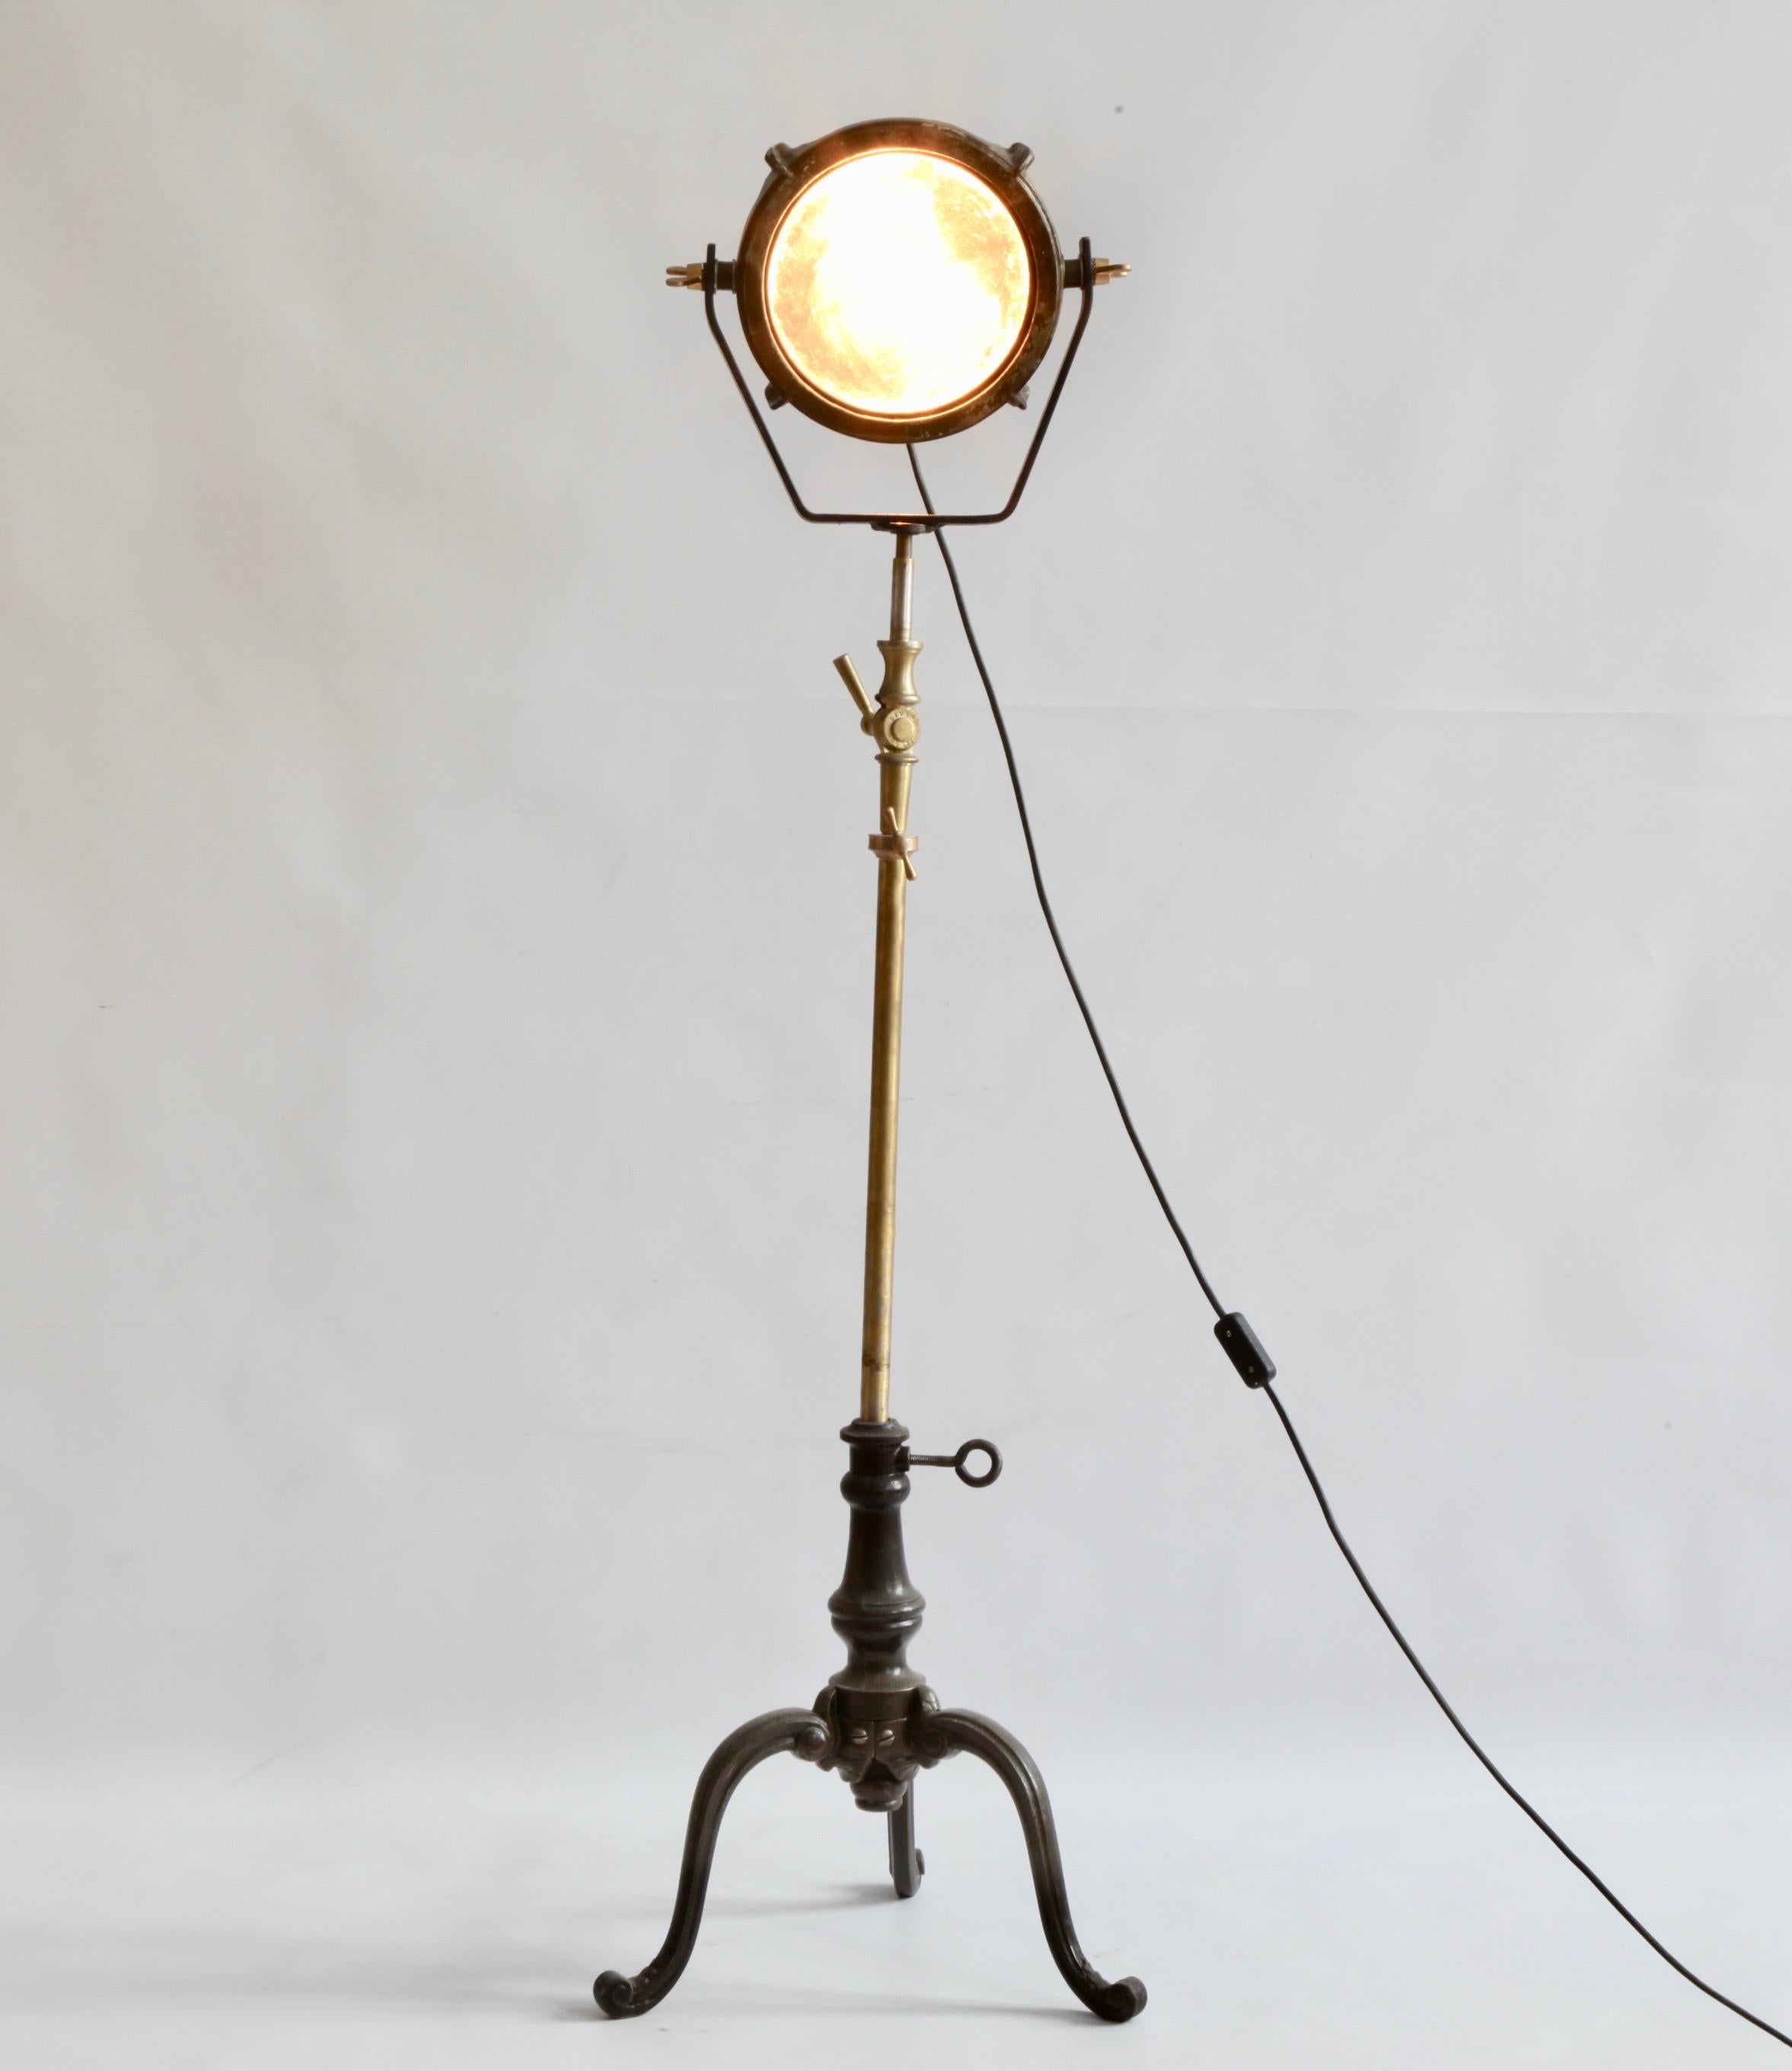 Lampe sur pied industrielle française du milieu du siècle, fabriquée à partir de composants en métal et en laiton. Ajustable à la taille.